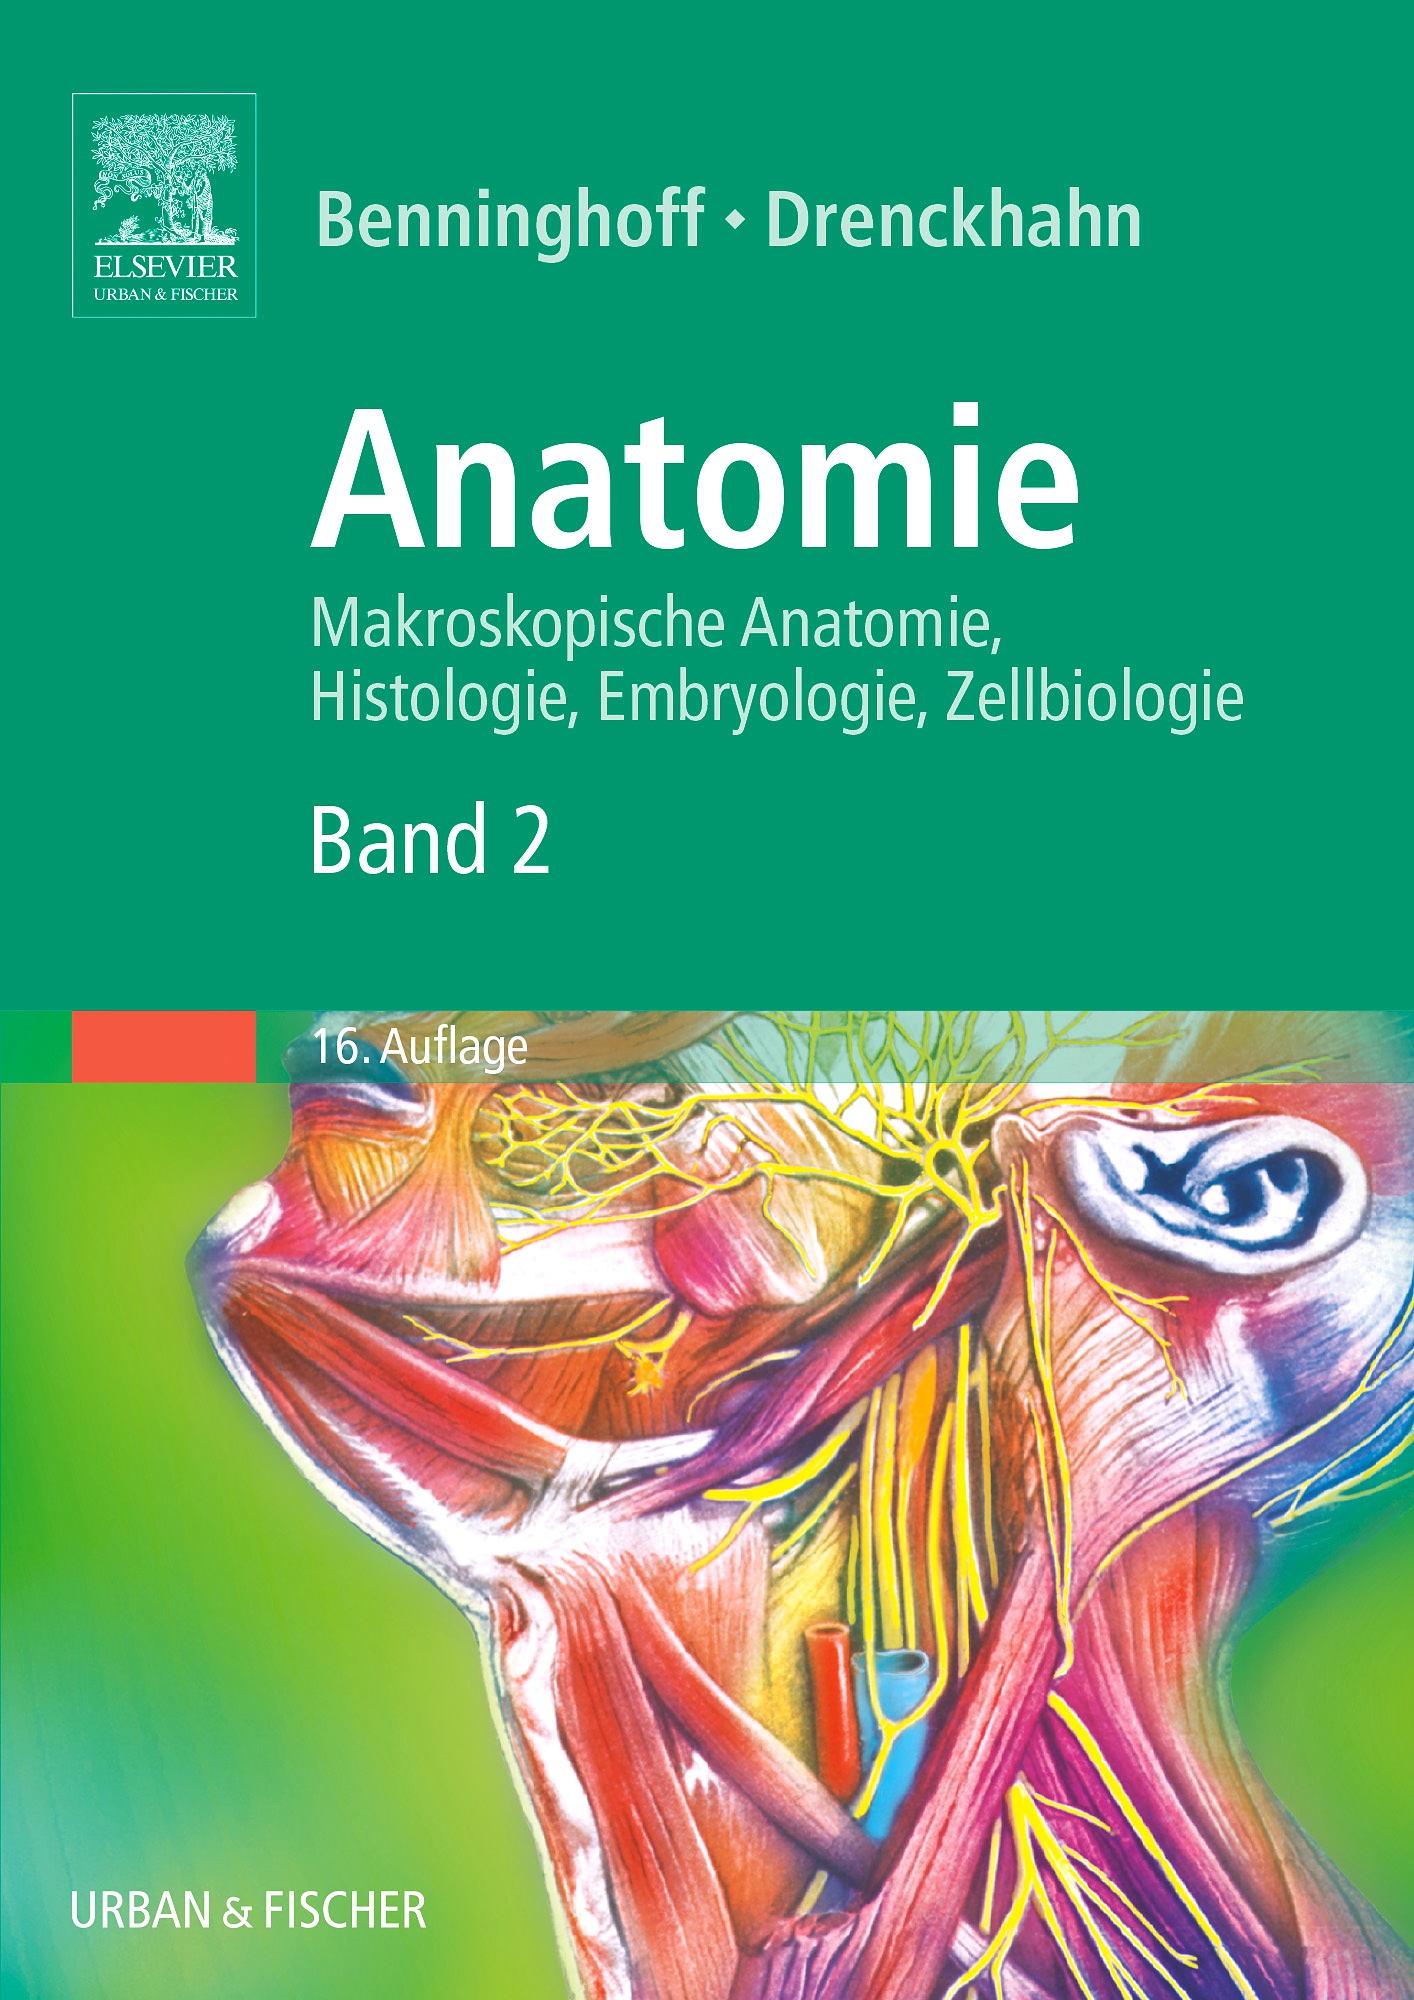 Anatomie, Makroskopische Anatomie, Embryologie und Histologie des